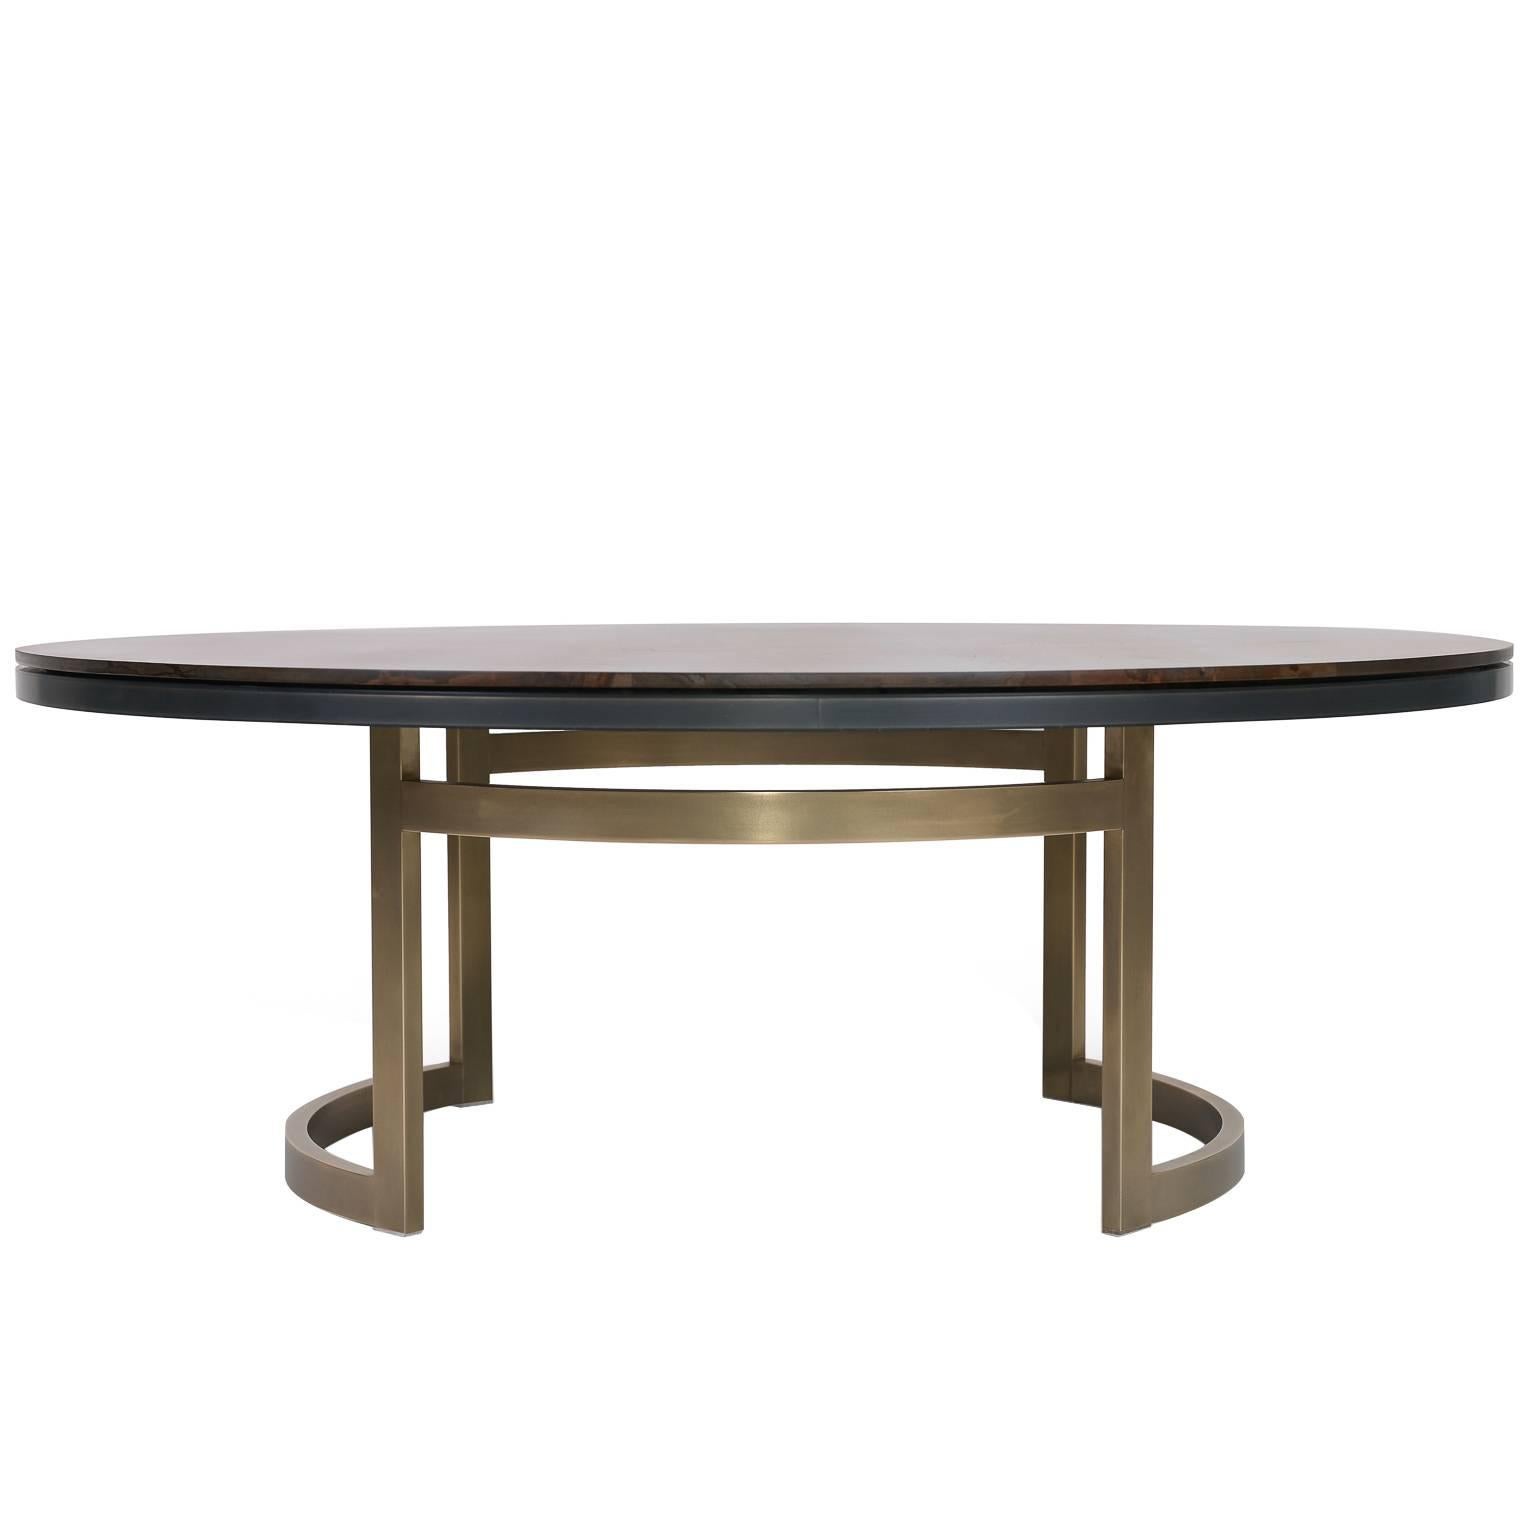 Table basse gothique personnalisable en bois, métal et résine 